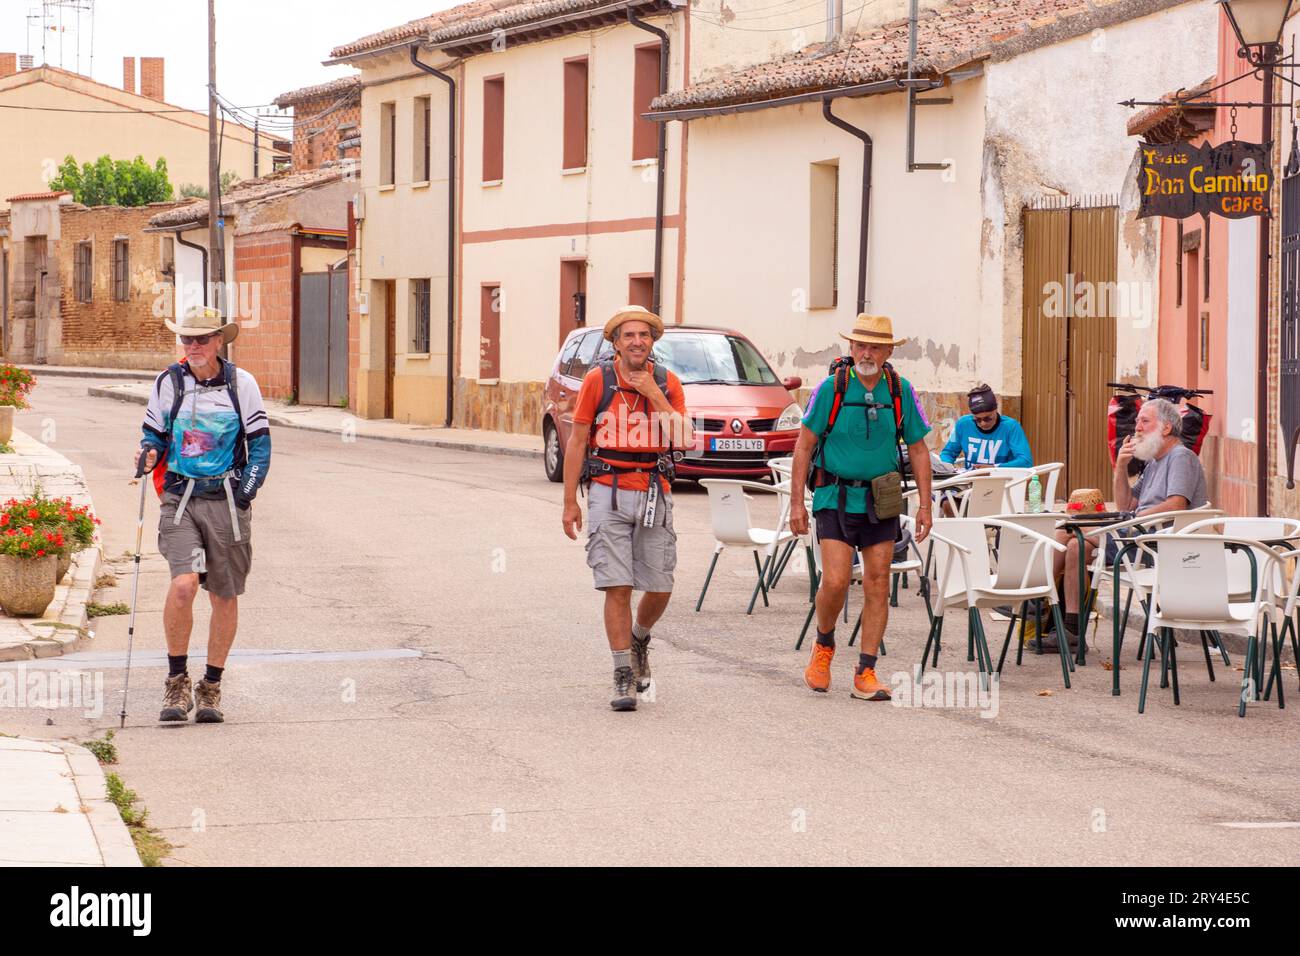 Pellegrini che camminano lungo il cammino di Santiago, il cammino di San Giacomo, nella città spagnola di Villalcazar in Spagna Foto Stock